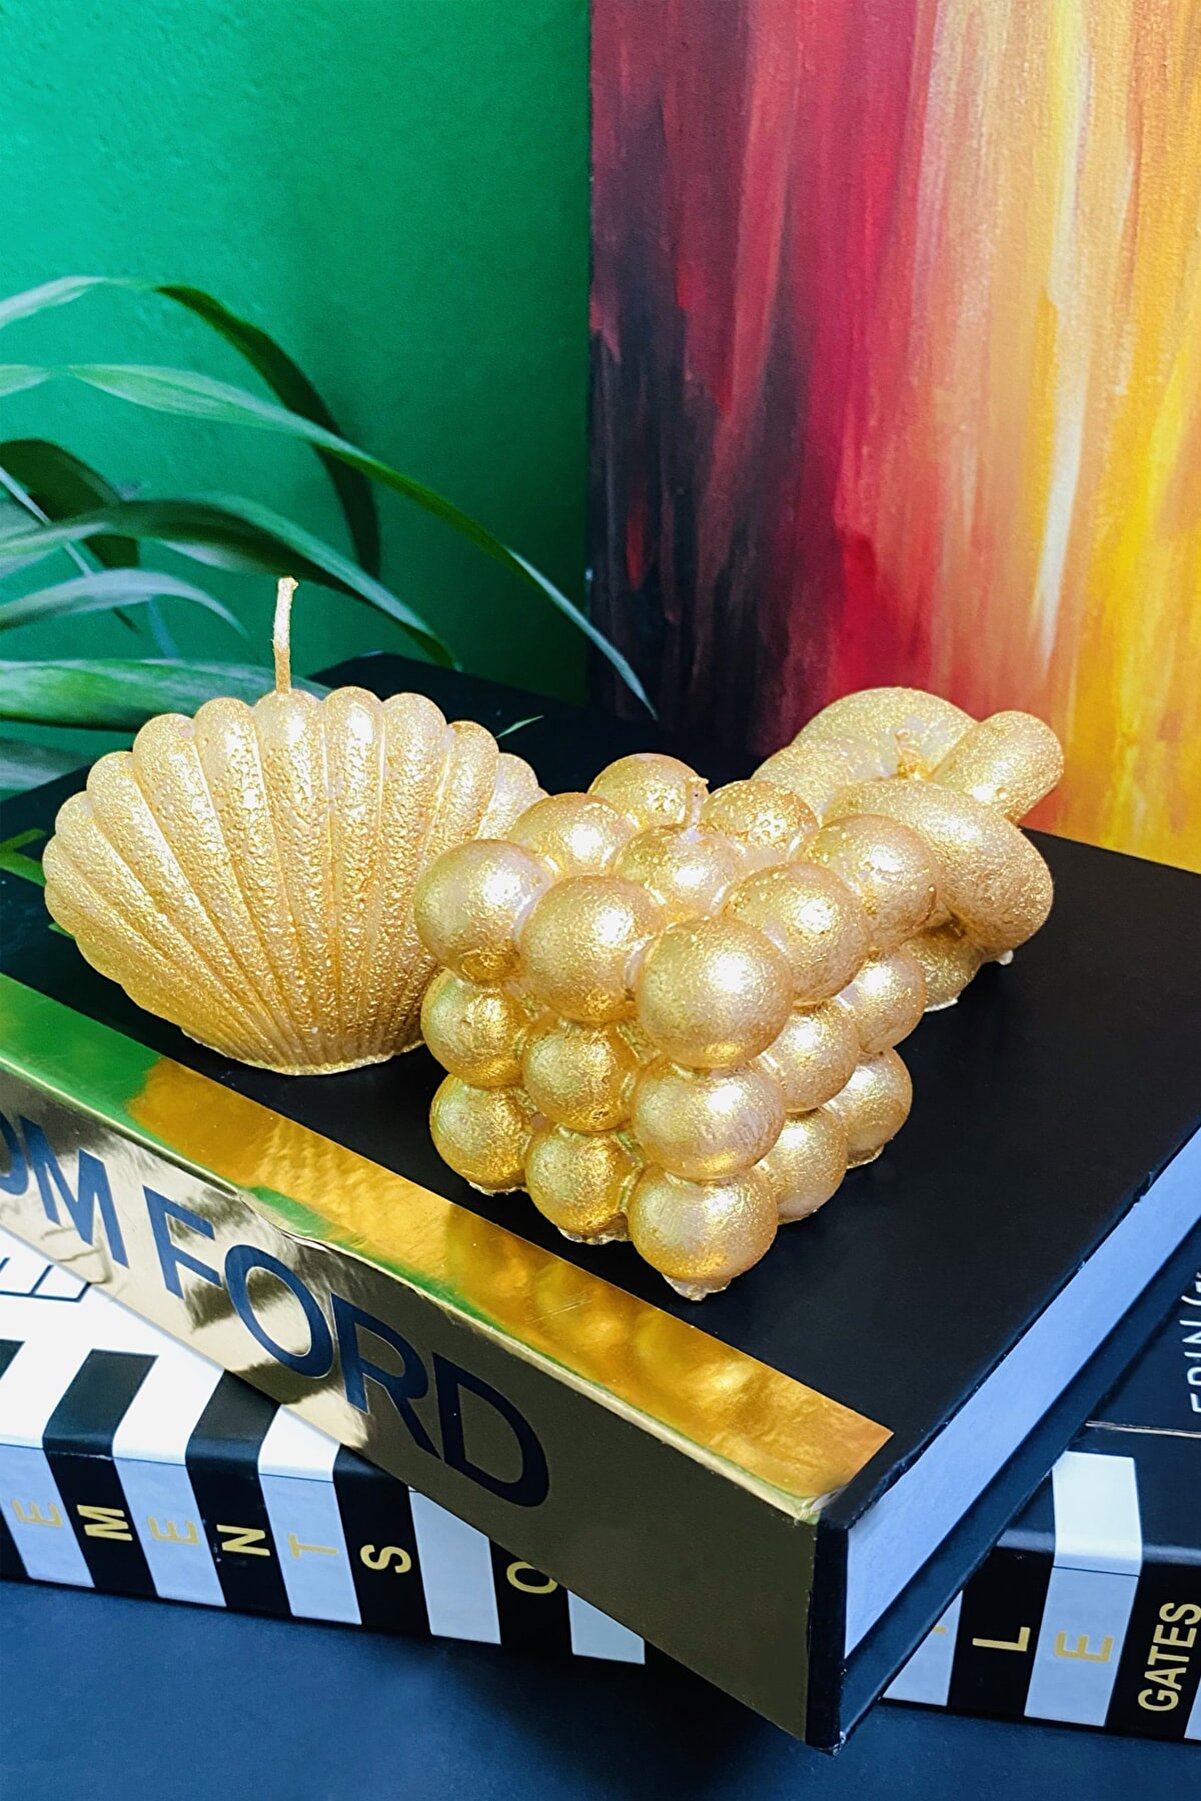 SANAT SEPET İŞLERİ Premium Gold Vanilya Kokulu Bubble & Istiridye Hediyelik Dekoratif Mum - 3'lü Set